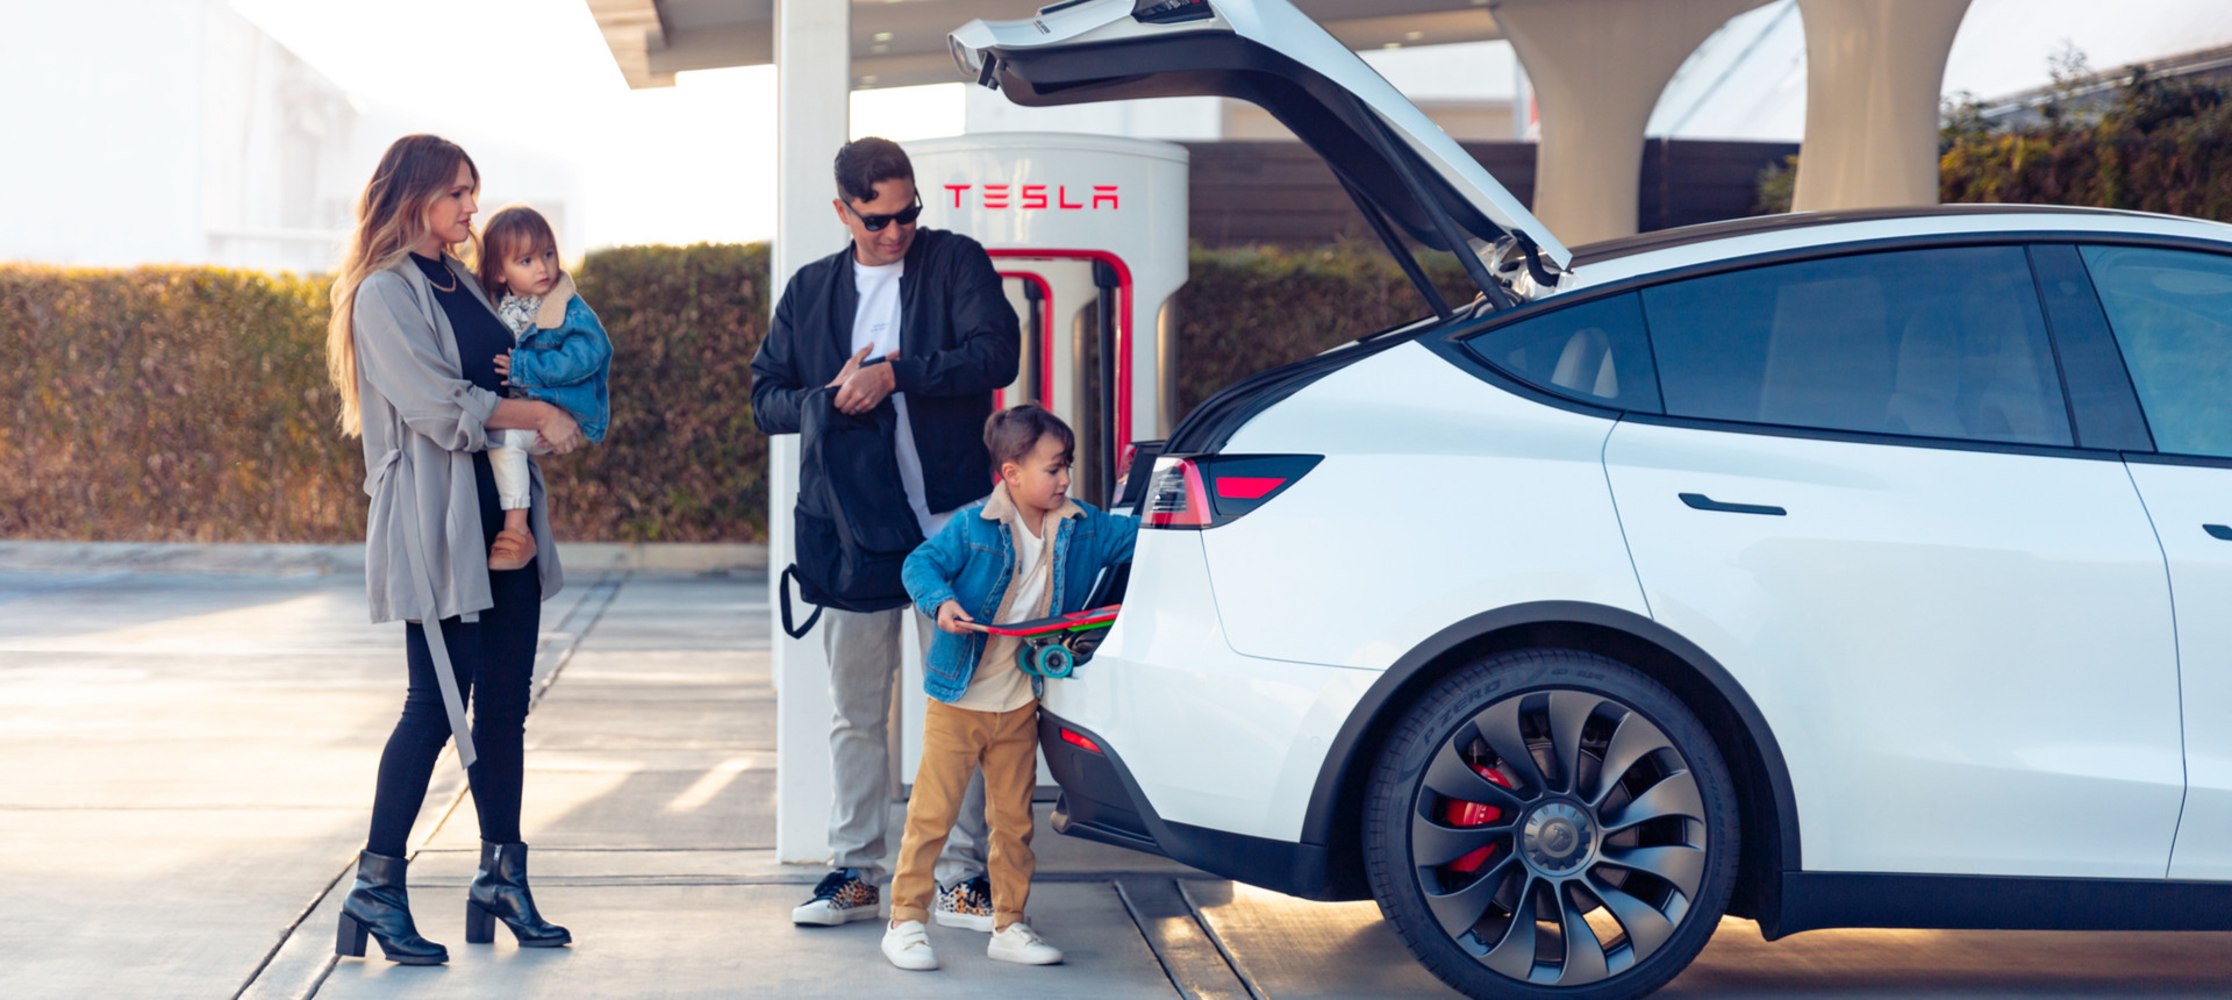 משפחה מטעינה Tesla יחד. 